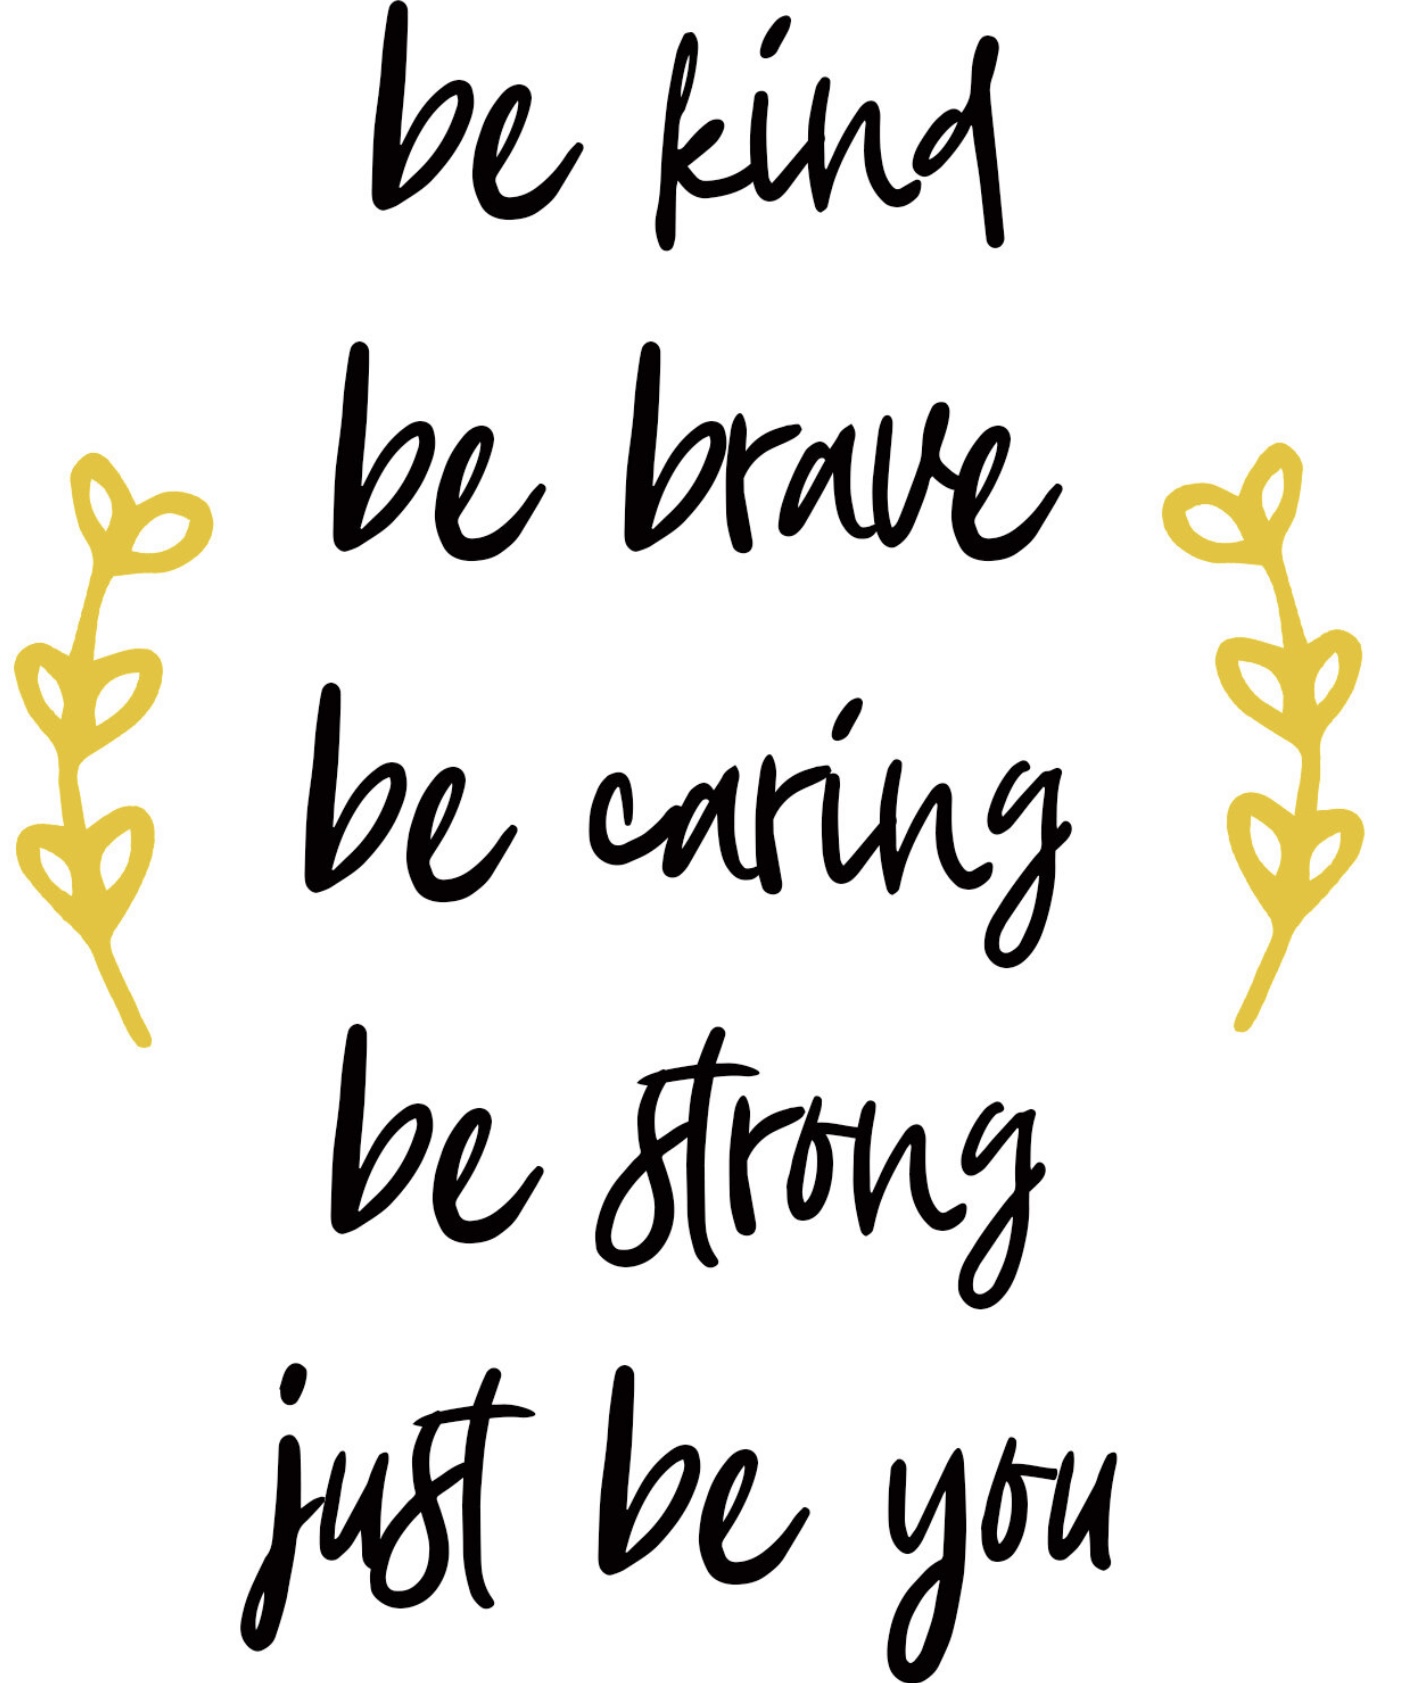 kind-strong-brave